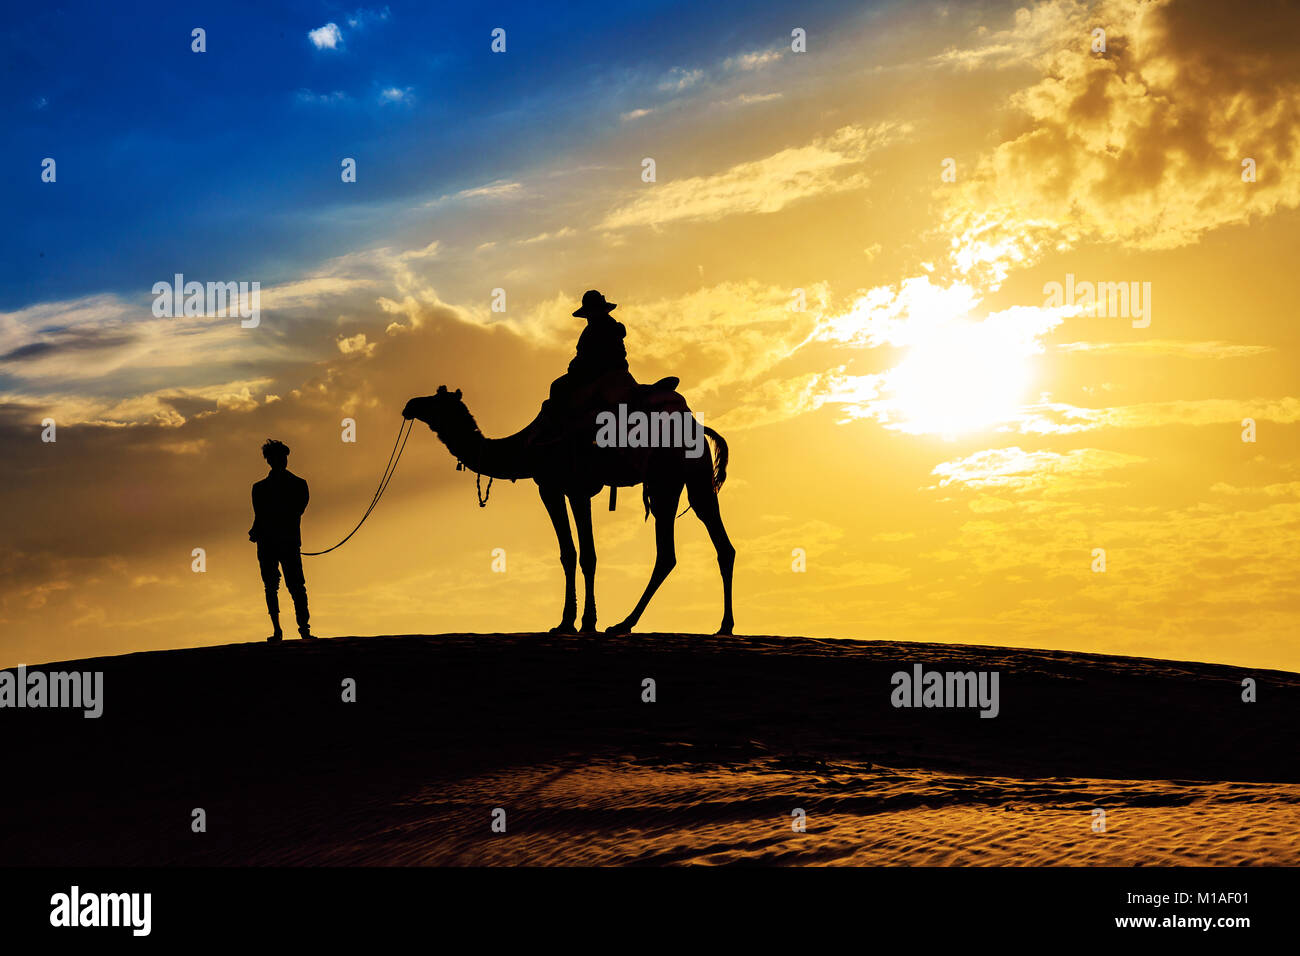 Tramonto nel deserto a Jaisalmer Rajasthan con tourist sul cammello in silhouette effetto e moody sky. Foto Stock